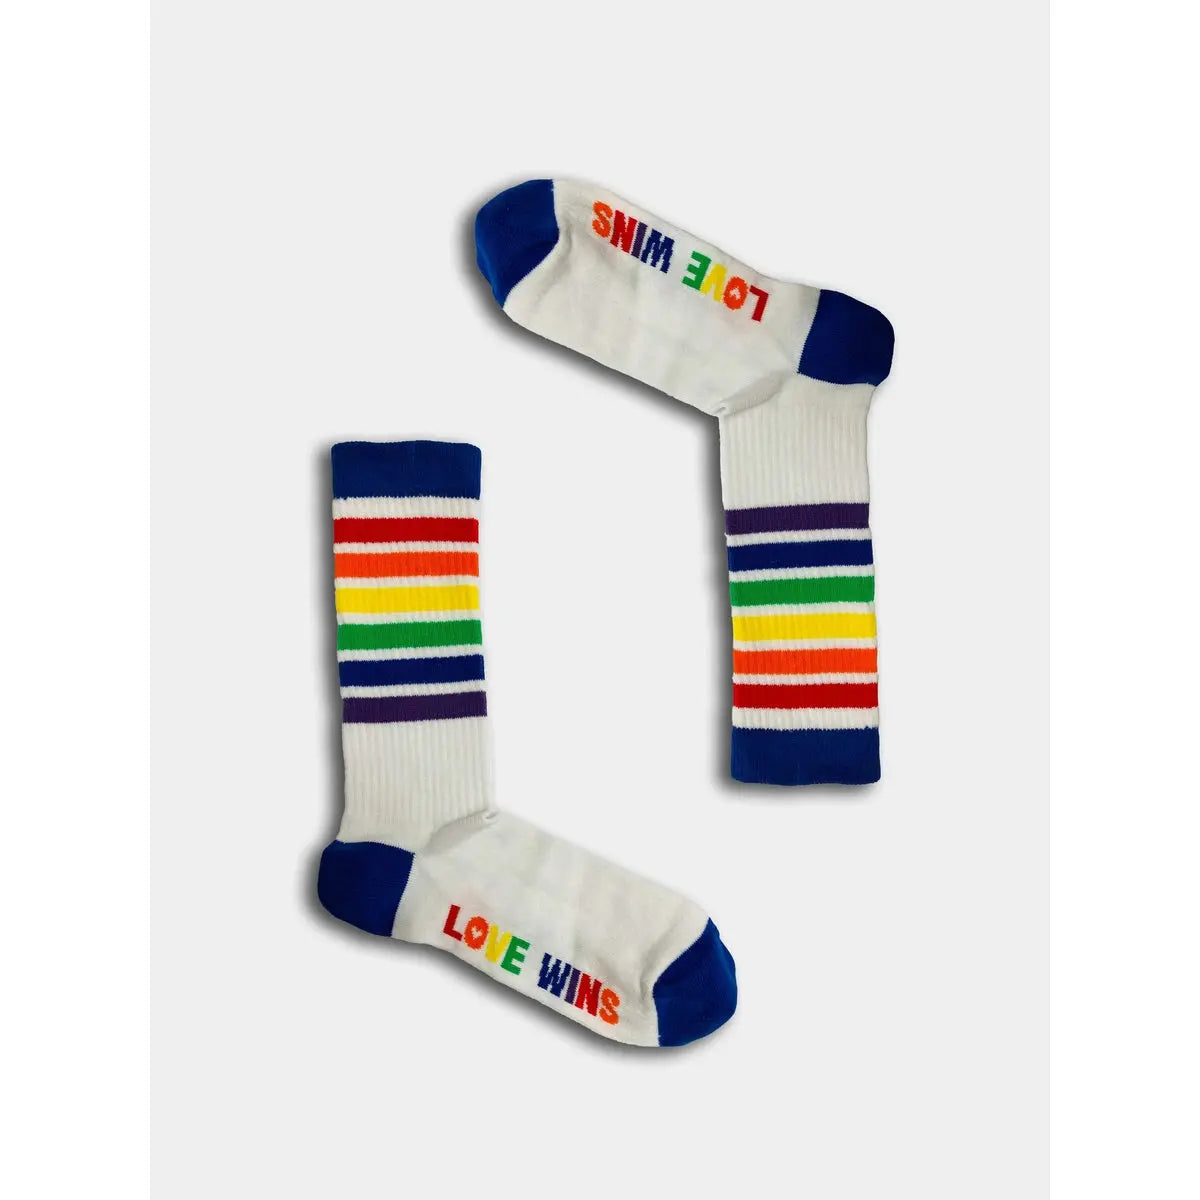 Boxt Socks - Tennissocken mit Regenbogen Motiv - 3 Paar